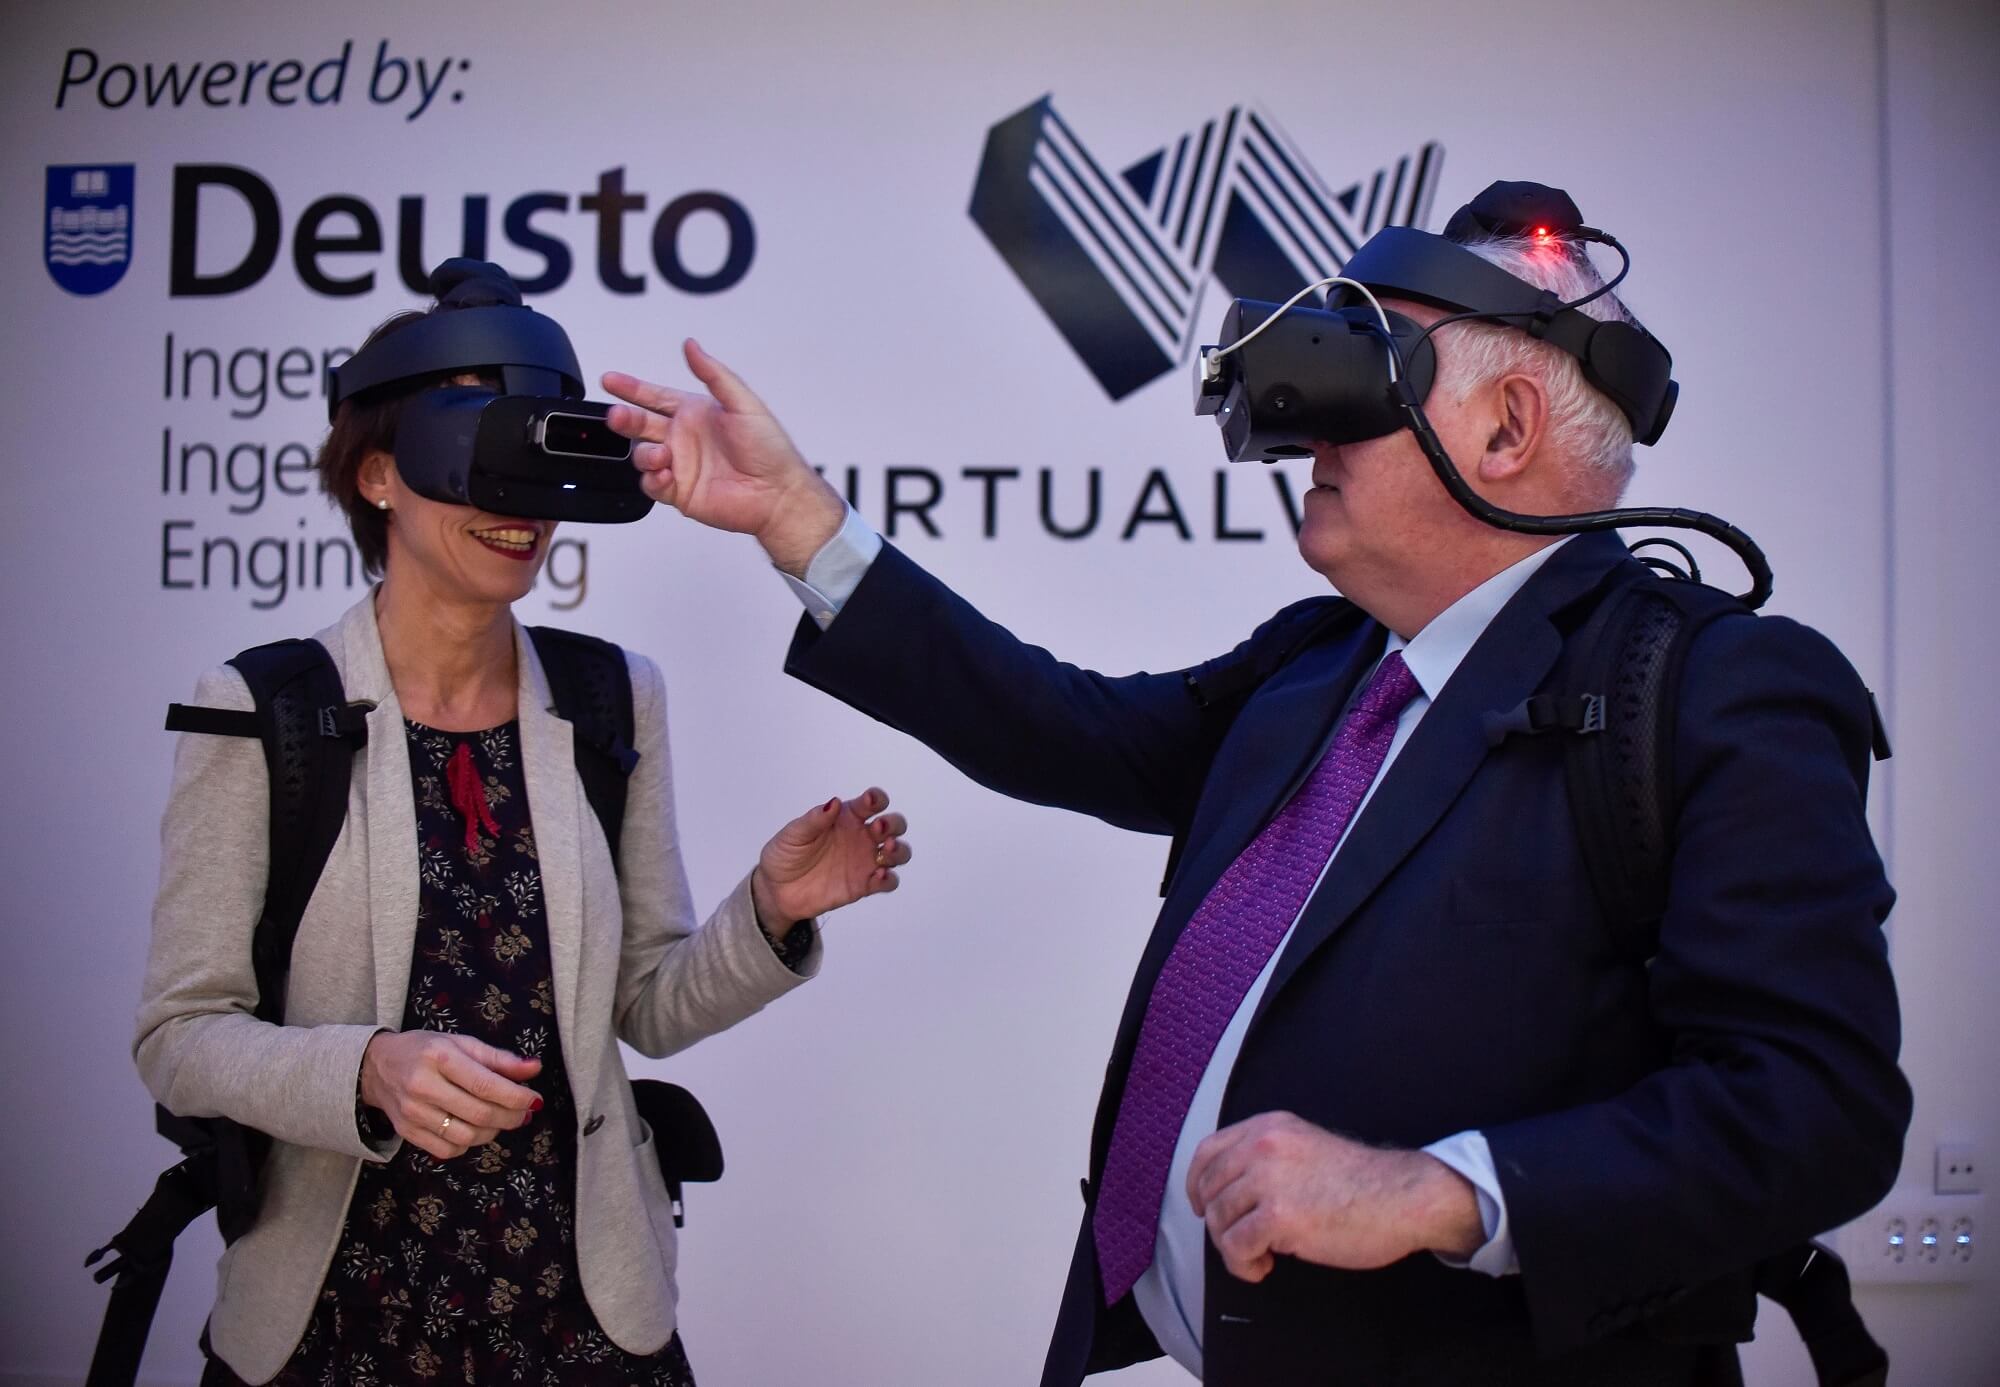 Realidad aumentada y realidad virtual: ¿Qué son estas tecnologías? iLab